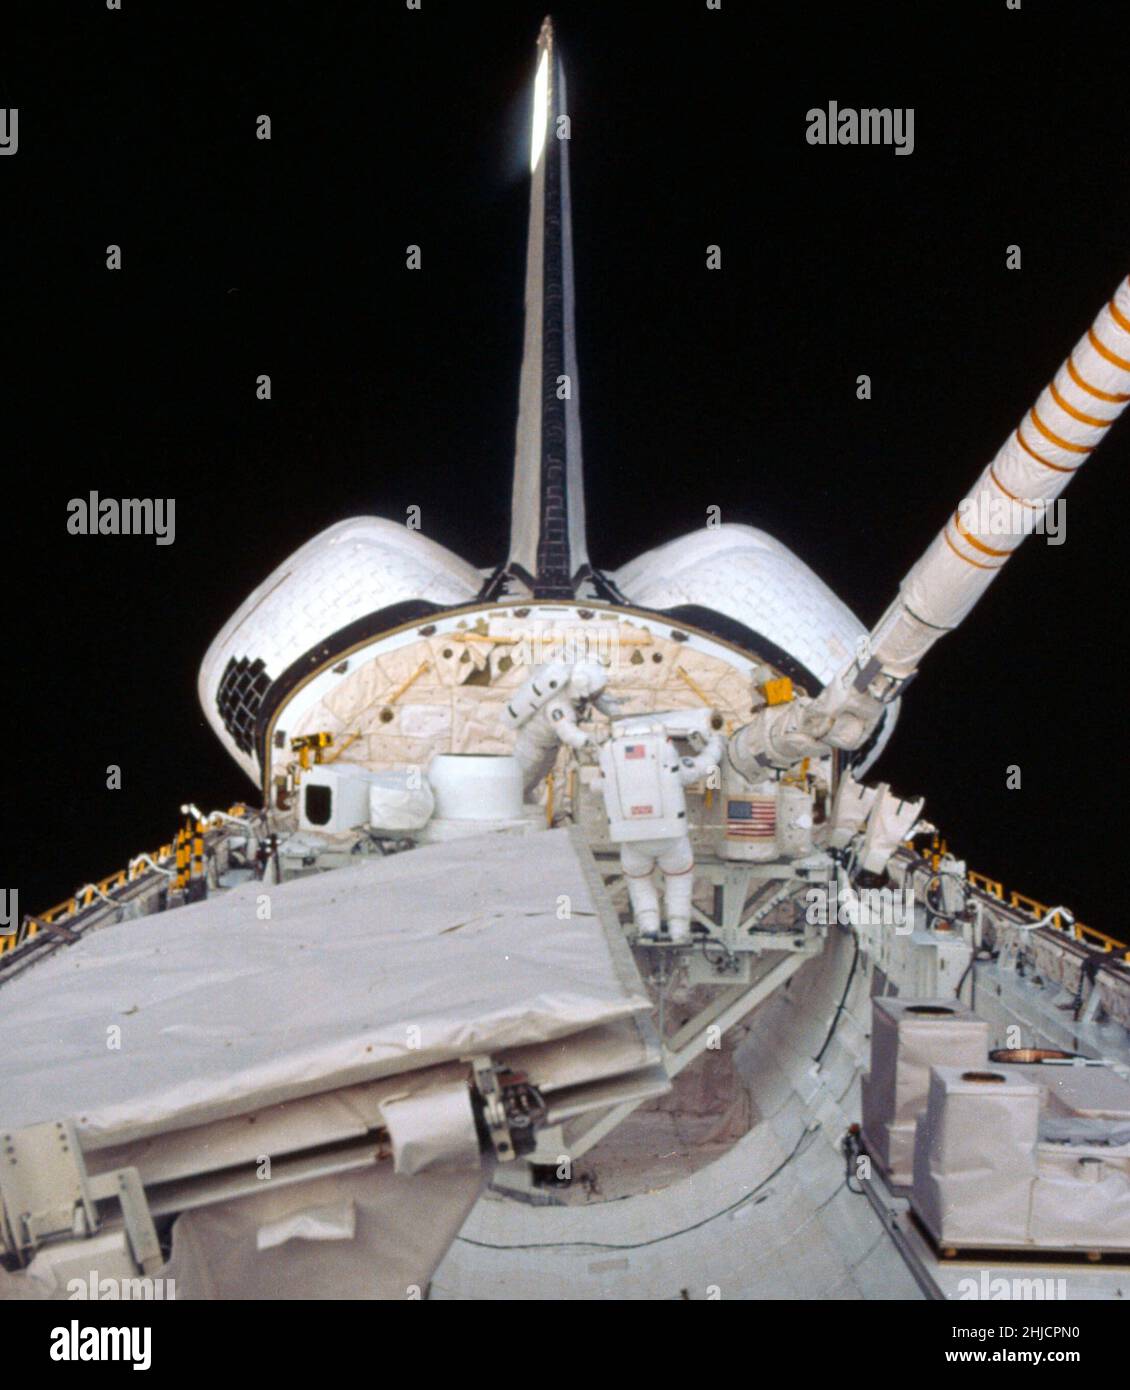 Gli astronauti Kathryn D. Sullivan, al centro a sinistra, e David C. Leestma, entrambi specialisti della missione 41-G, eseguono una simulazione nello spazio di rifornimento di un'altra navicella spaziale in orbita. La loro stazione sulla navetta spaziale Challenger è il sistema di rifornimento orbitale (ORS), posizionato sulla peculiare struttura di supporto della missione (MPR ESS). La LFC (Large Format Camera) è rimasta tra i due specialisti della missione. In primo piano a sinistra si trova l'antenna per il radar di imaging a navetta (SIR-B) di bordo. Foto Stock